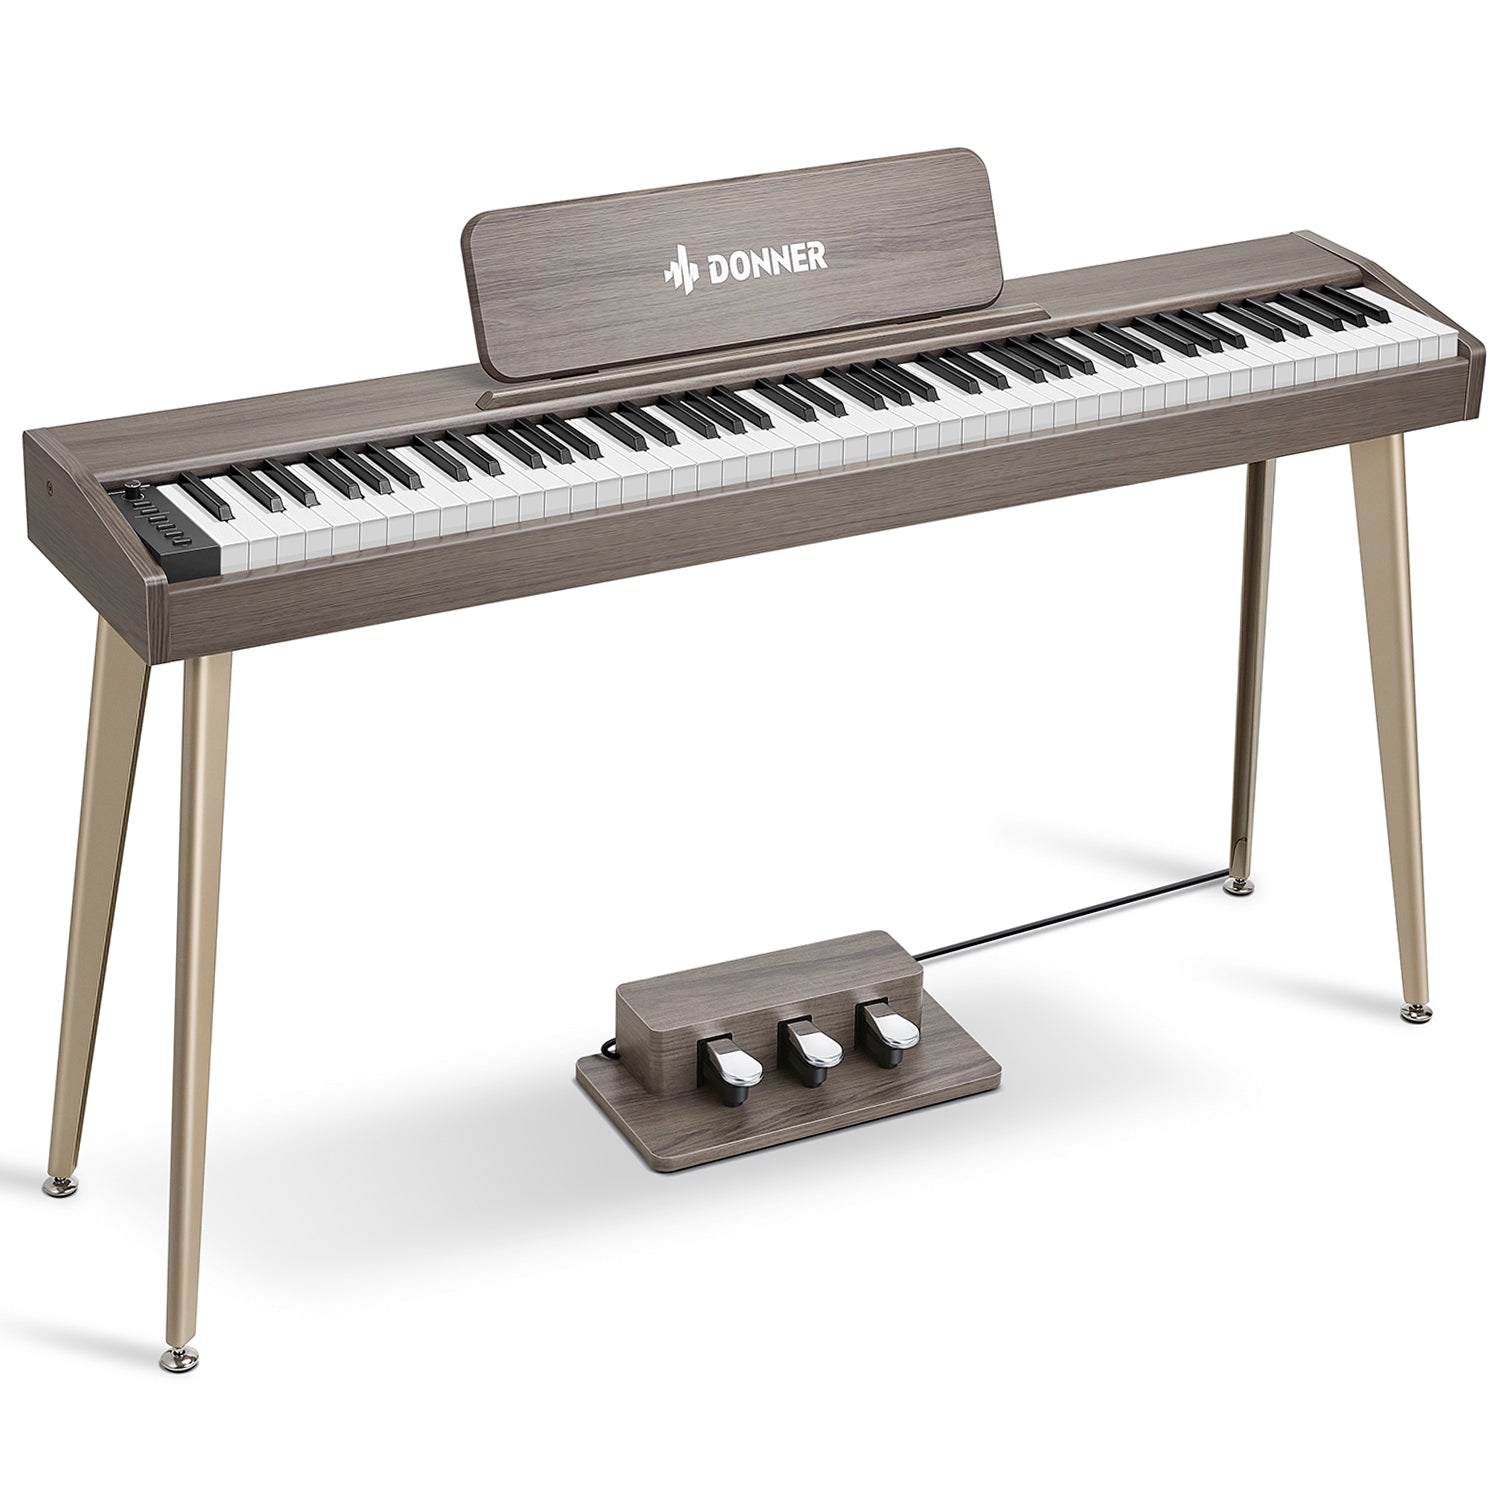 Donner DDP-60 Digitalpiano - Grau-Braun / Piano von Donner